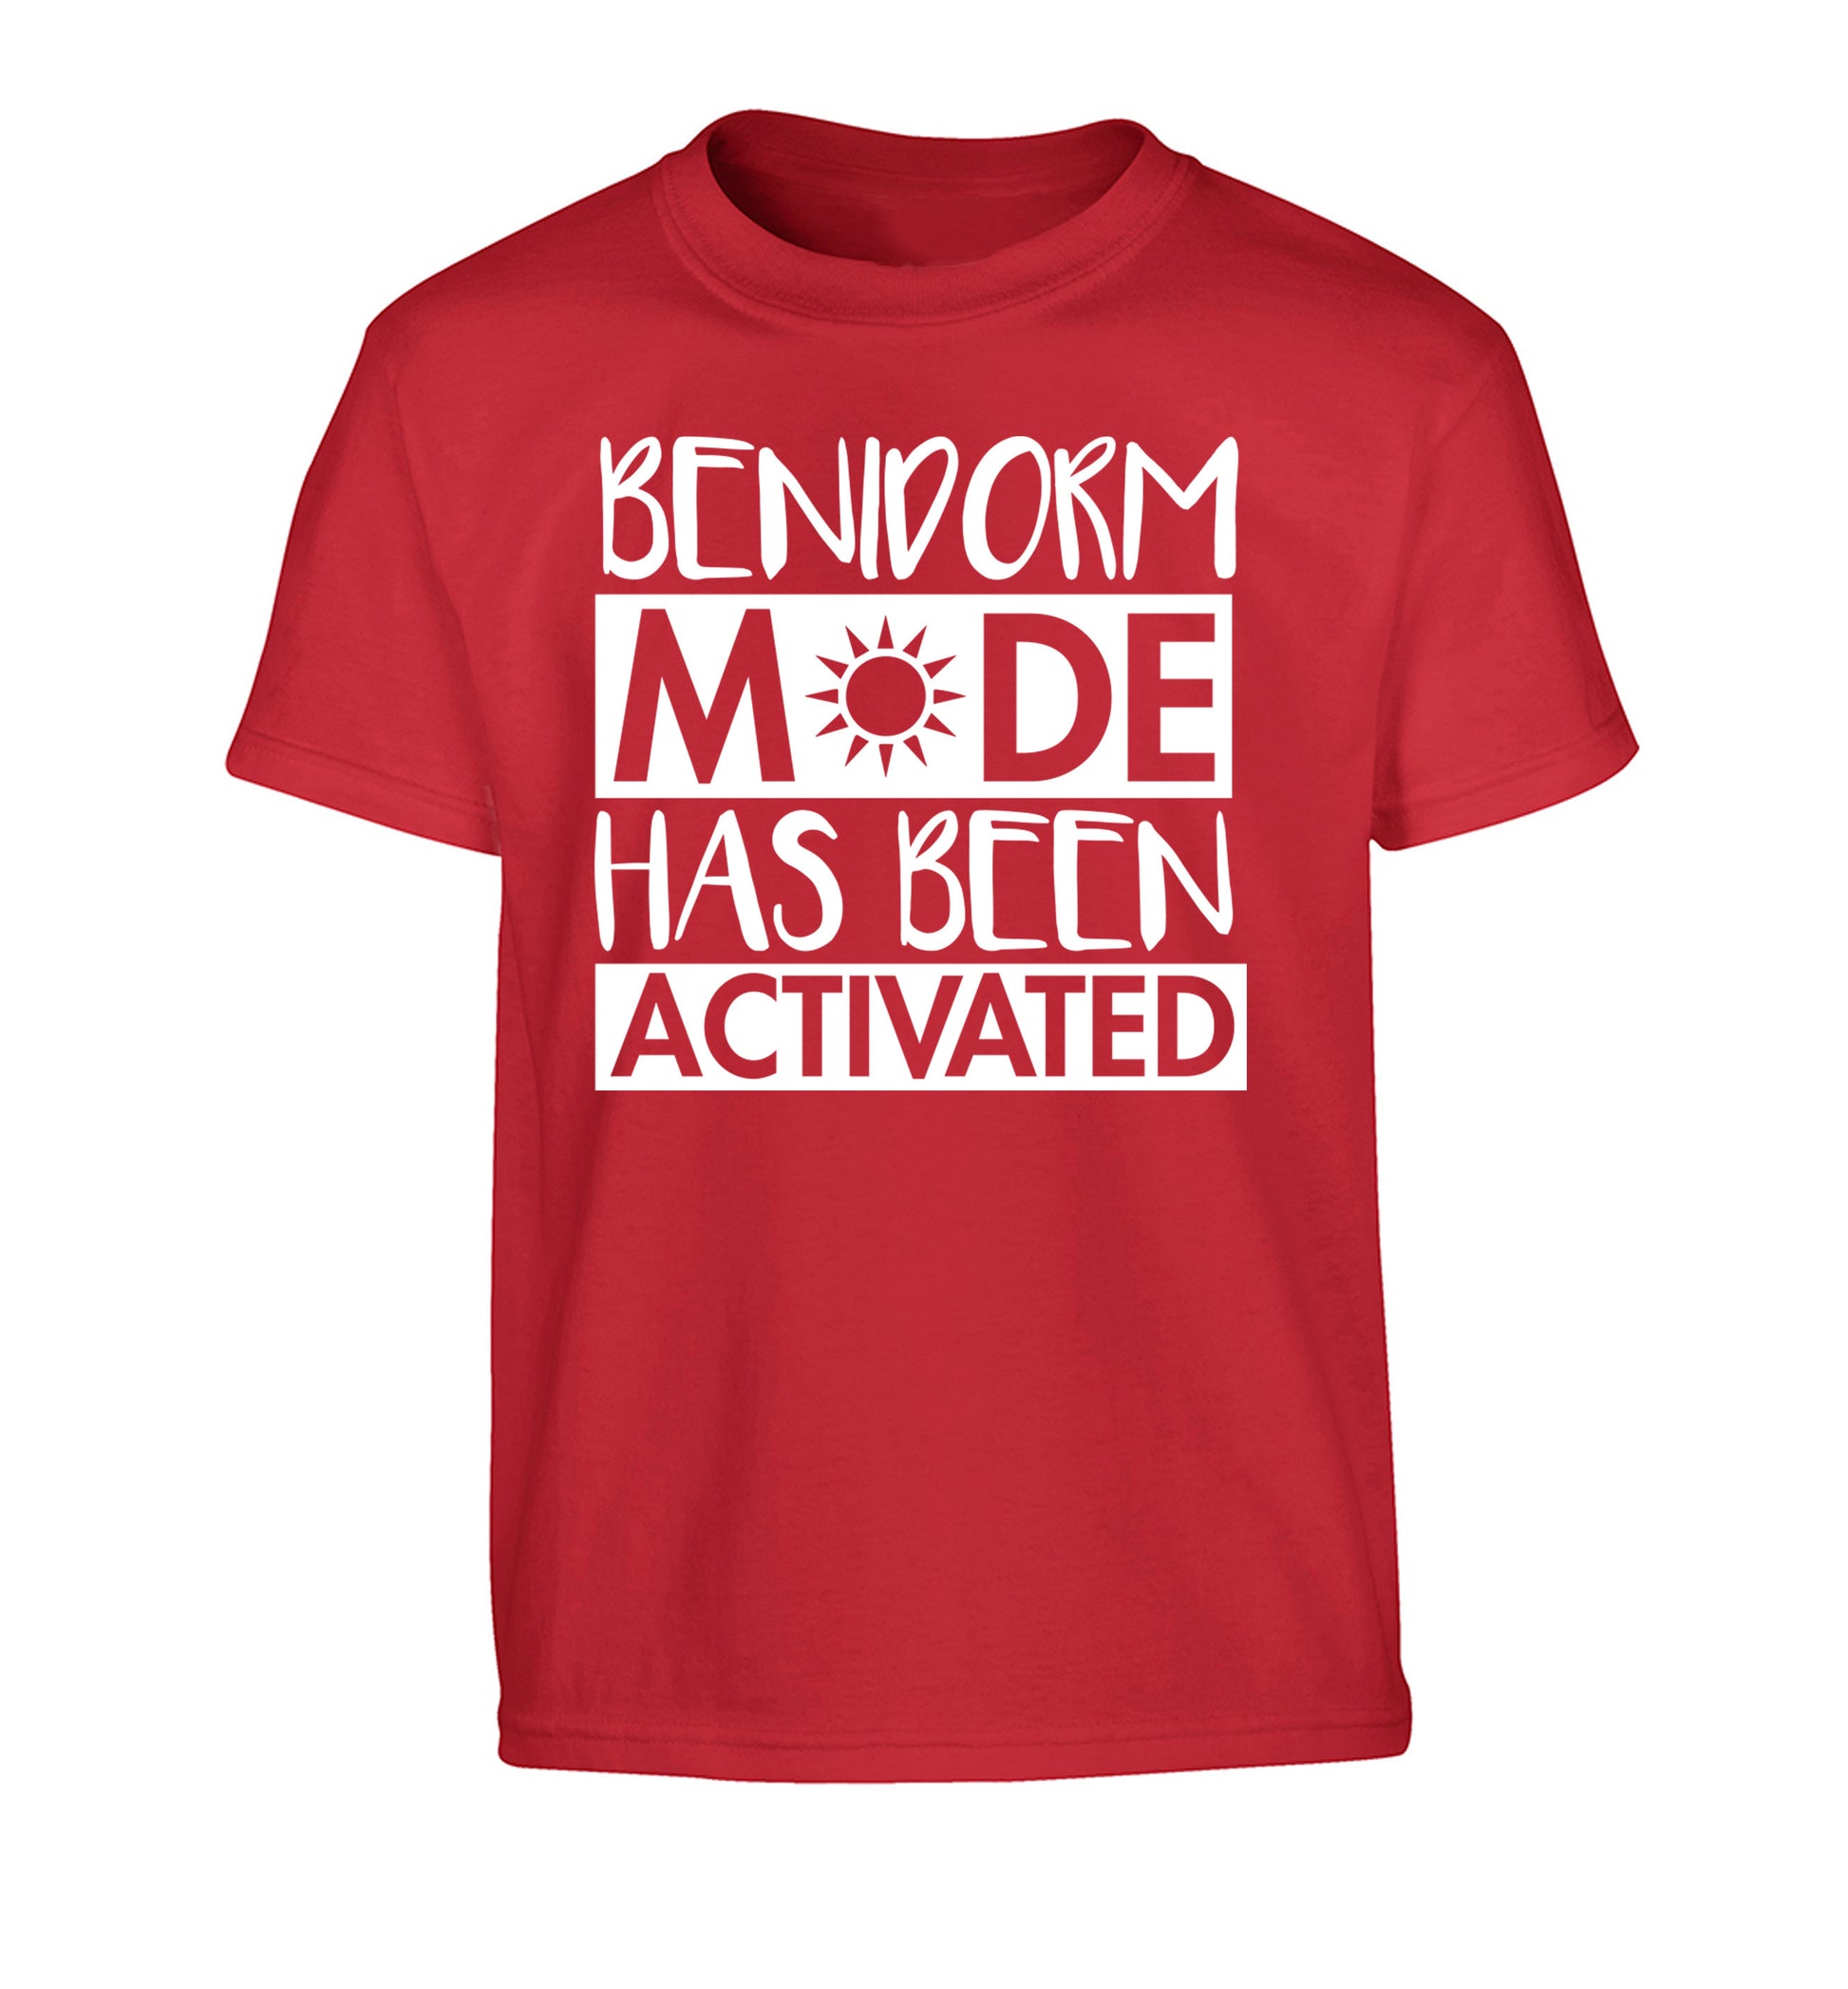 Benidorm mode has been activated Children's red Tshirt 12-14 Years